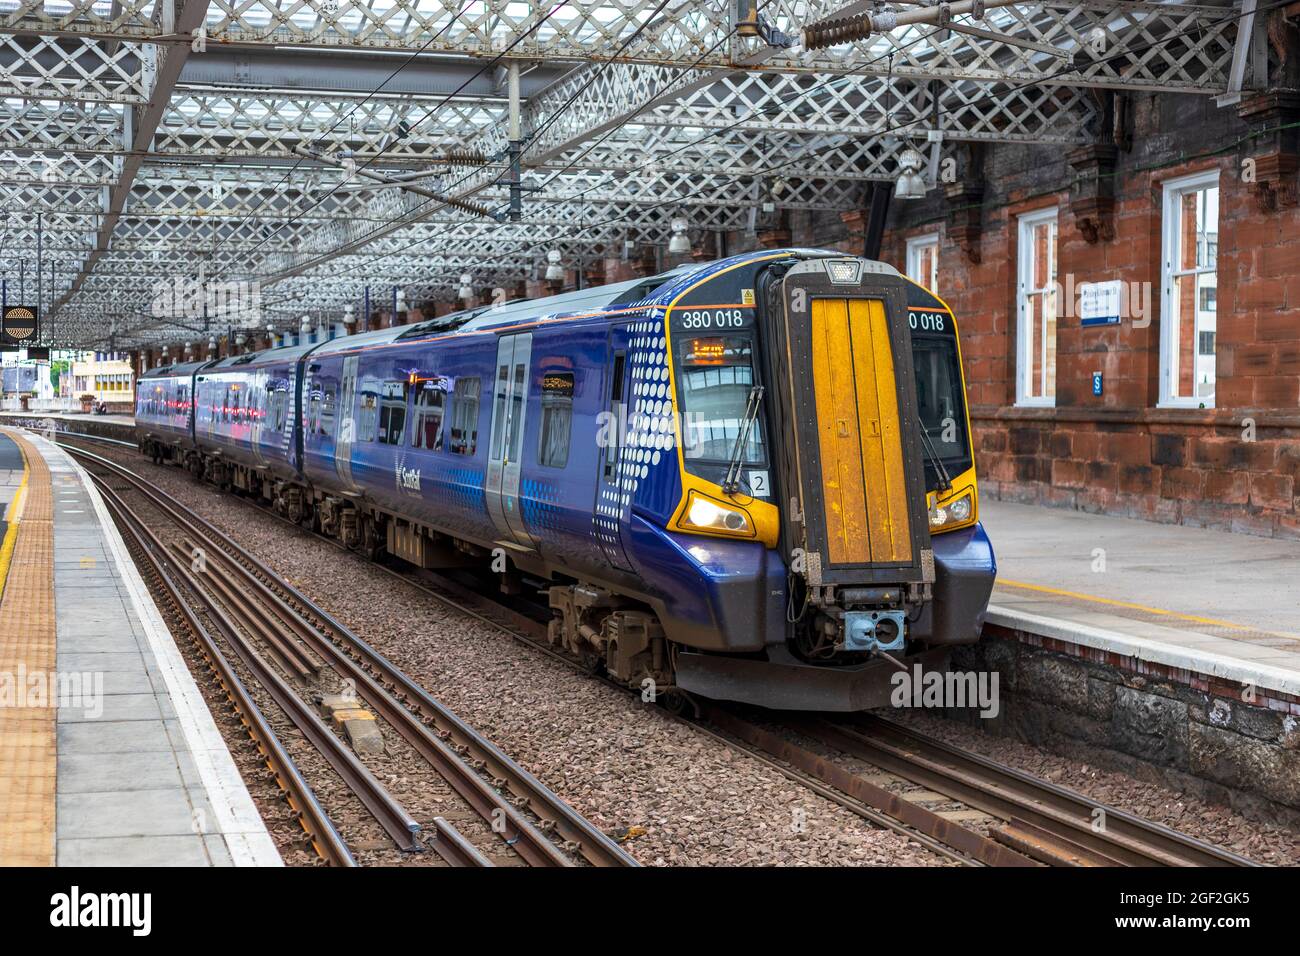 Le train ScotRail s'est arrêté à la plate-forme 4 de la gare de Paisley Gilmour Street, Paisly, Écosse, Royaume-Uni Banque D'Images